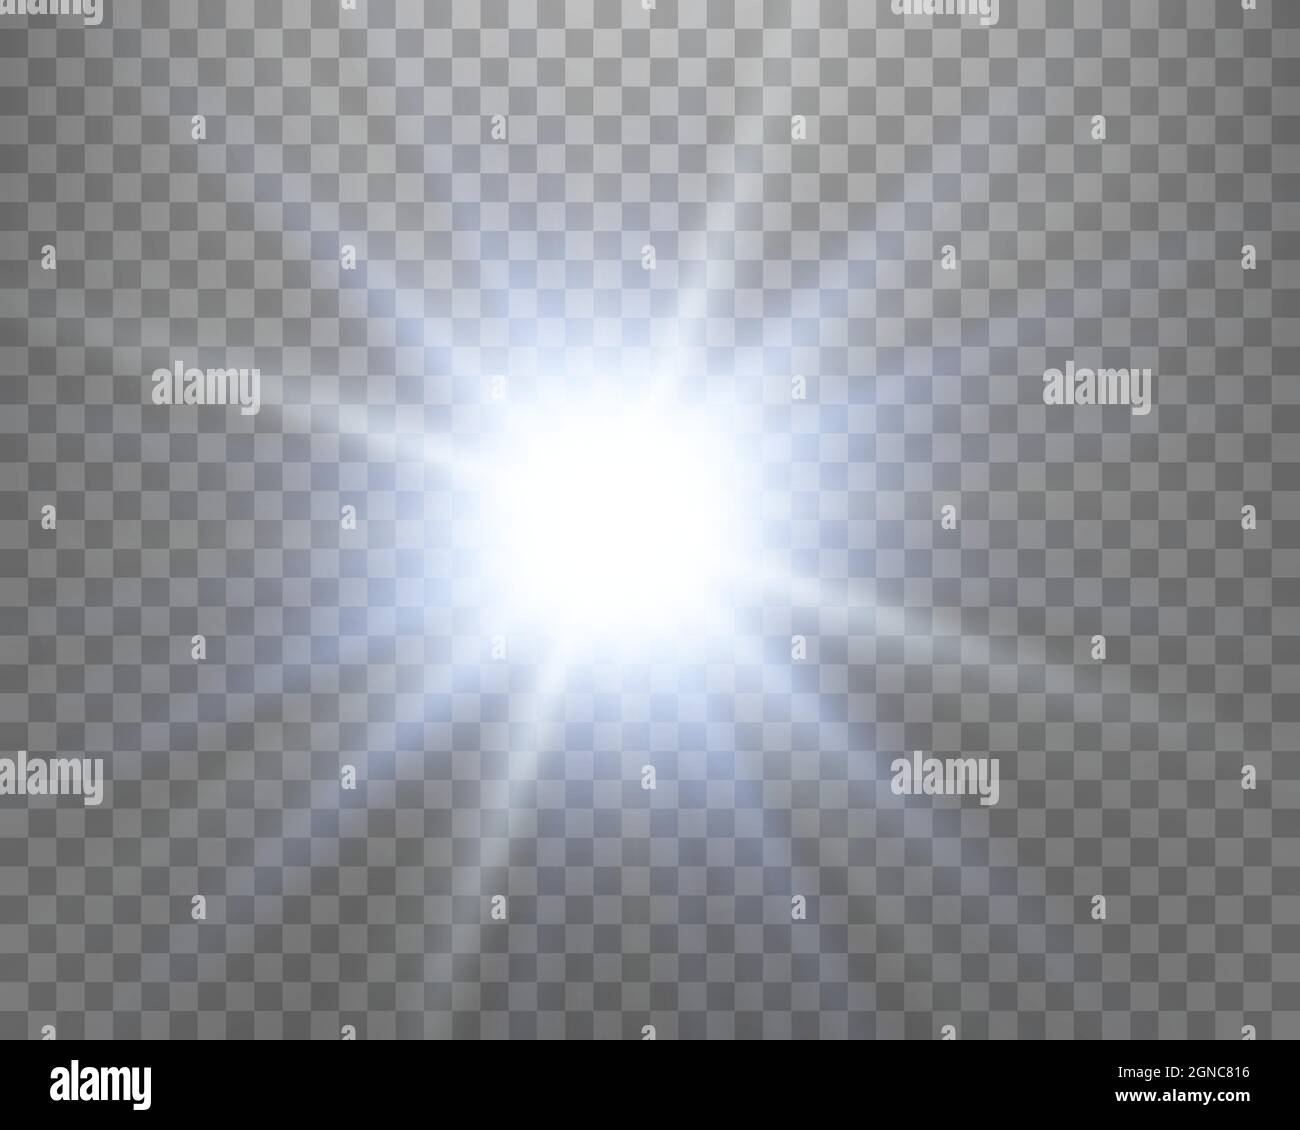 Vector blue light with lens flares. Sun, sun rays, dawn, glare